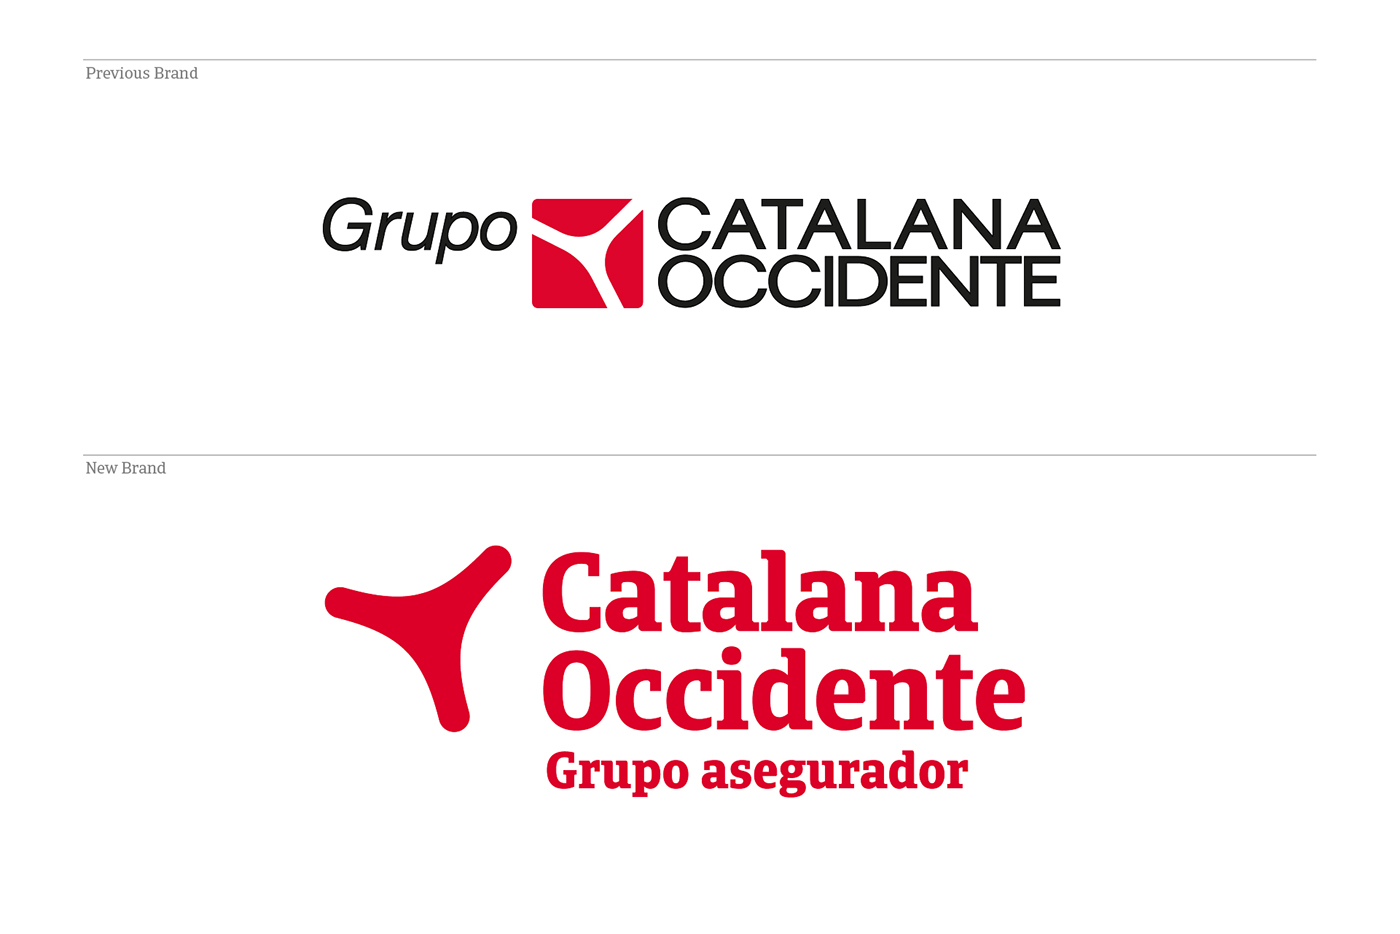 mucho catalana Occidente insurance